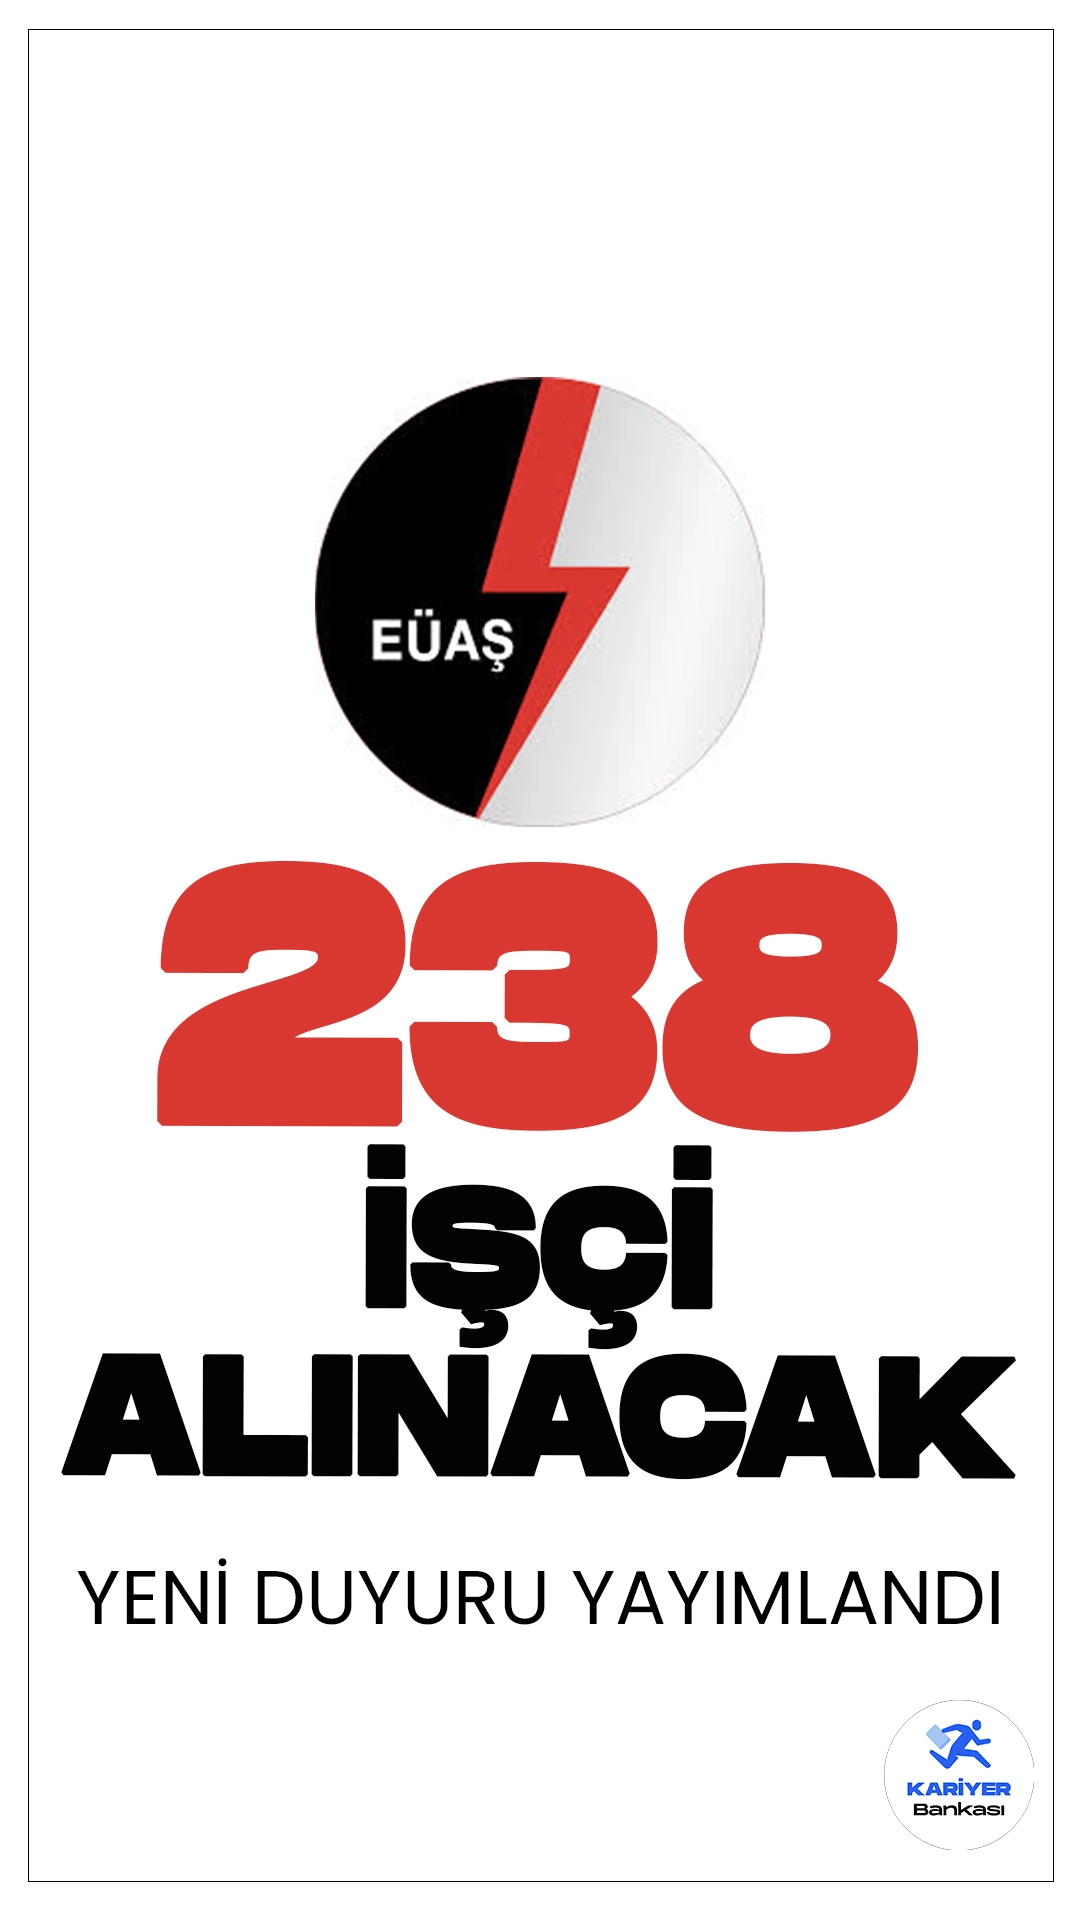 EÜAŞ 238 İşçi Alımı Yapılacak. Türkiye Elektrik Üretim Anonim Şirketi (EÜAŞ), taşra işyerlerinde 4857 sayılı İş Kanunu'na tabi olarak çalıştırılmak üzere 238 daimi işçi alımı yapacak. Başvurular 26 Haziran itibarıyla alnacak. Başvuru yapacak adayların genel ve özel şartları sağlaması gerekmektedir.